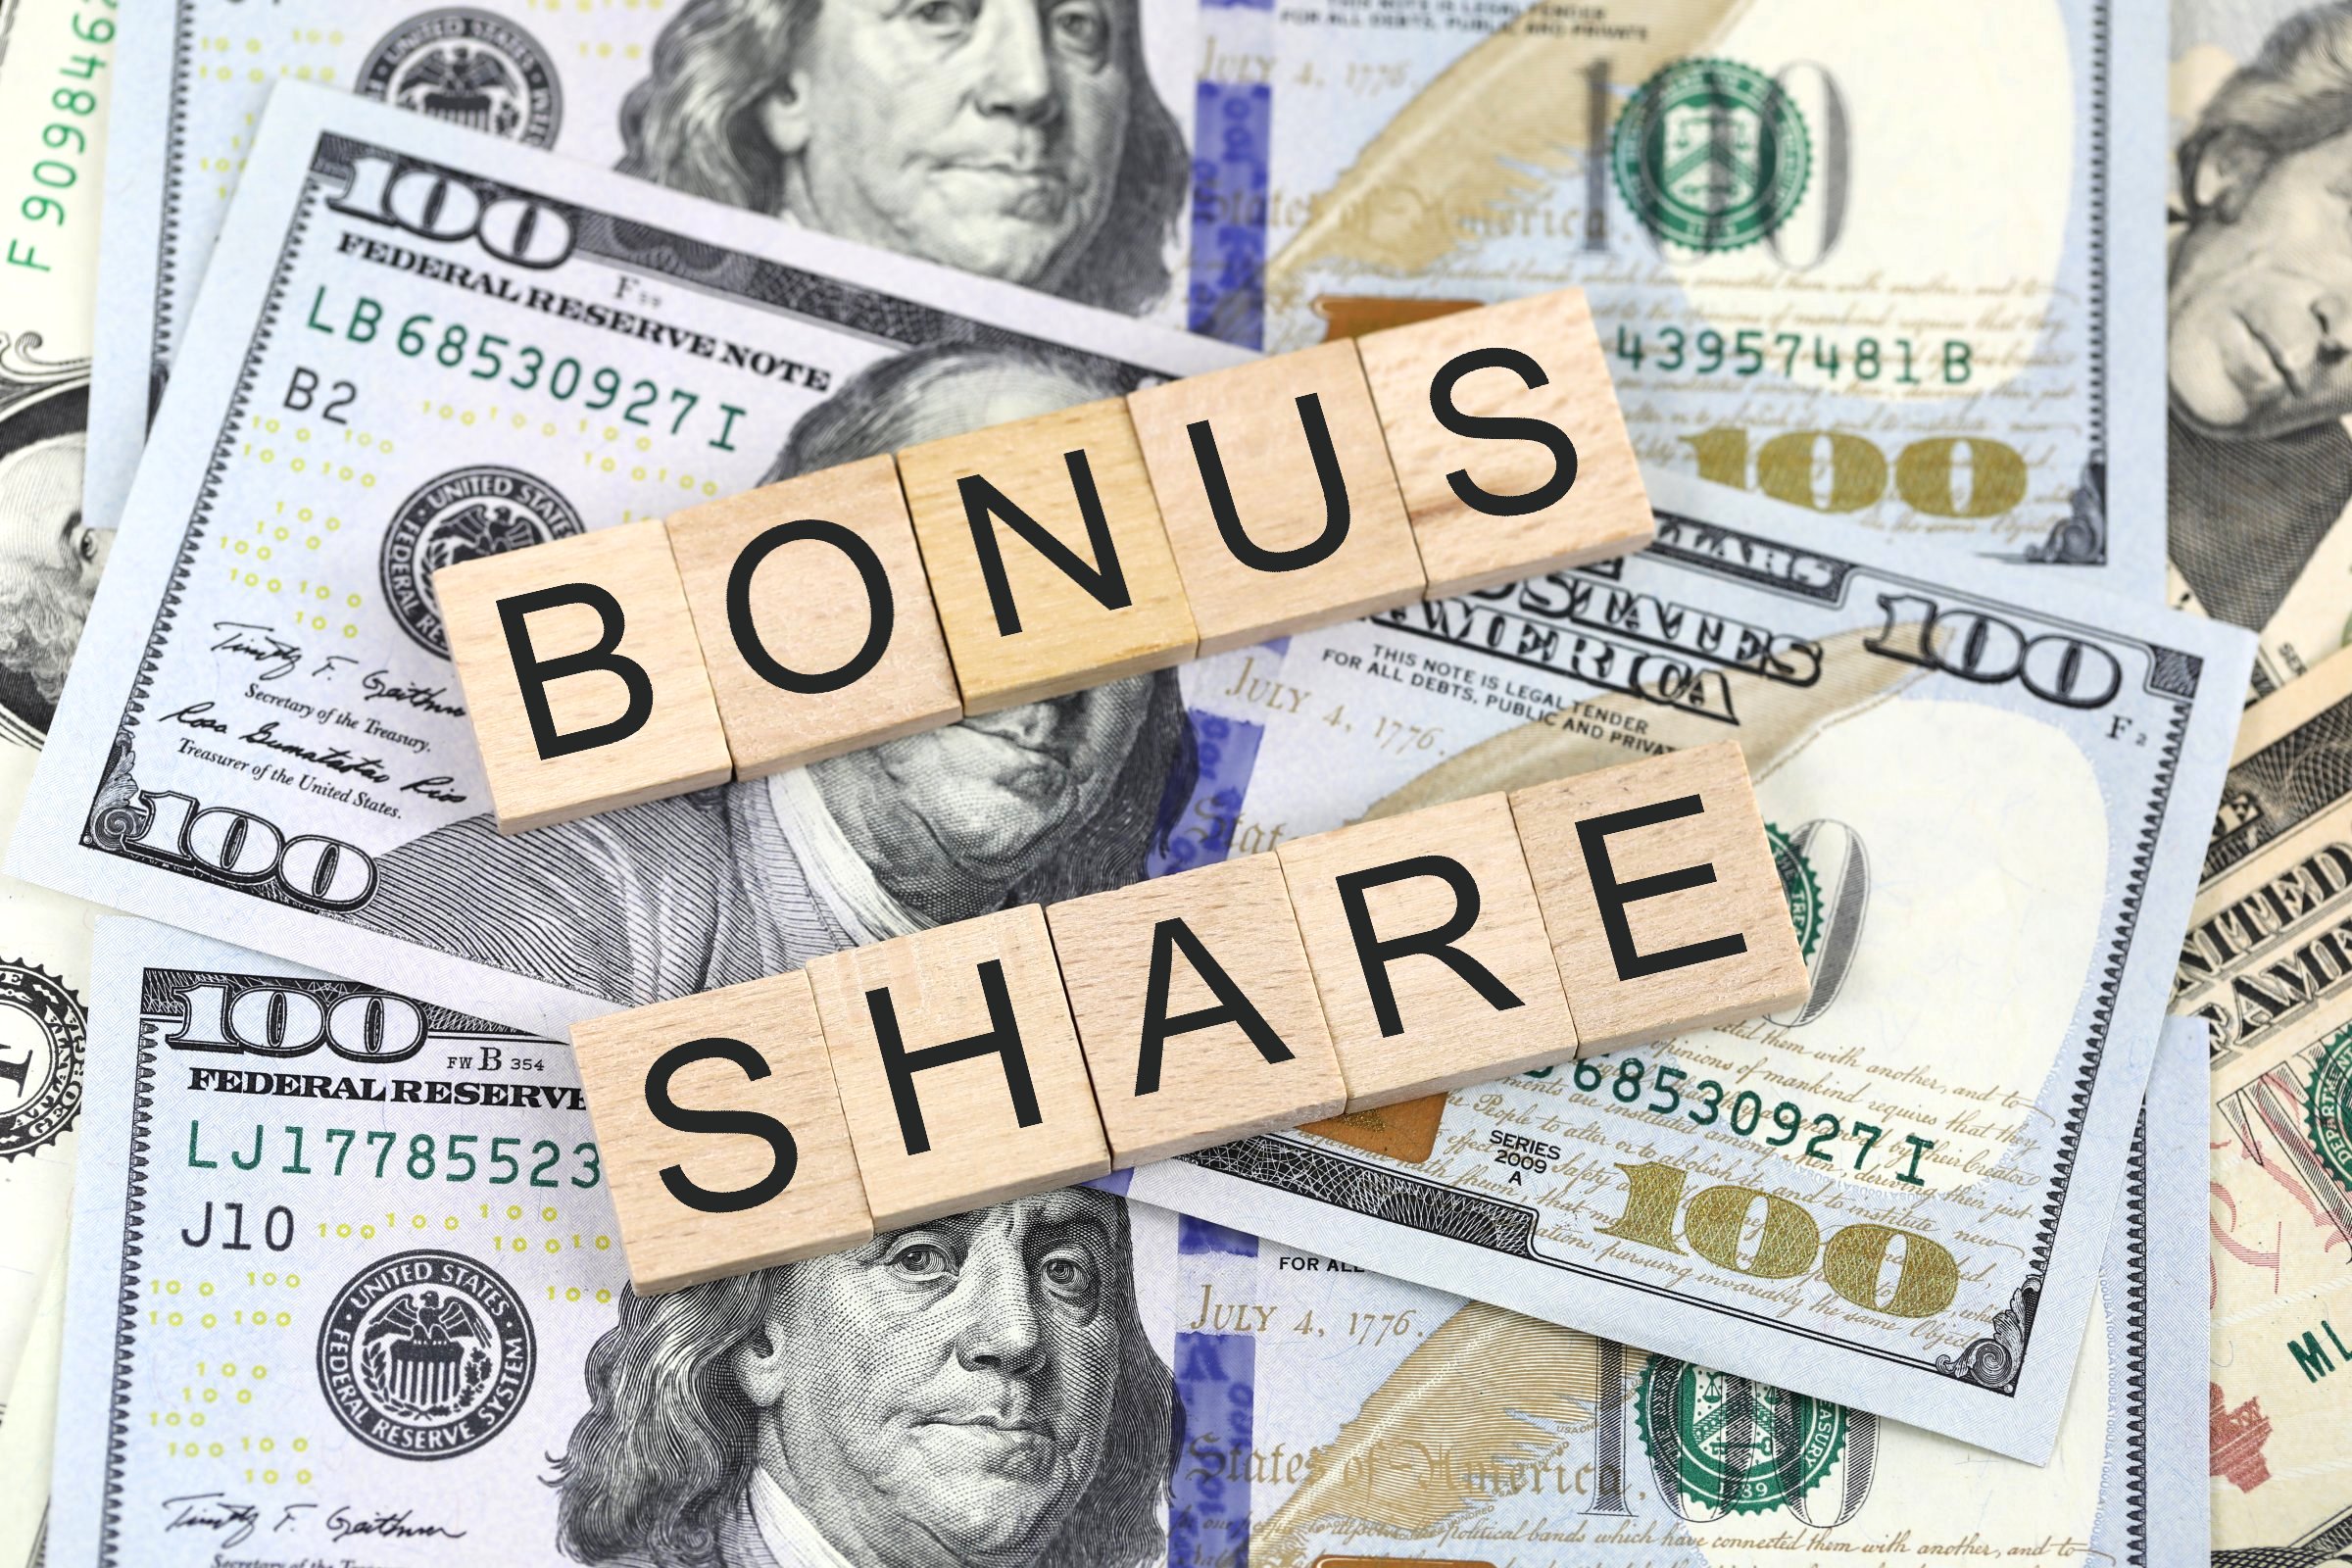 bonus share